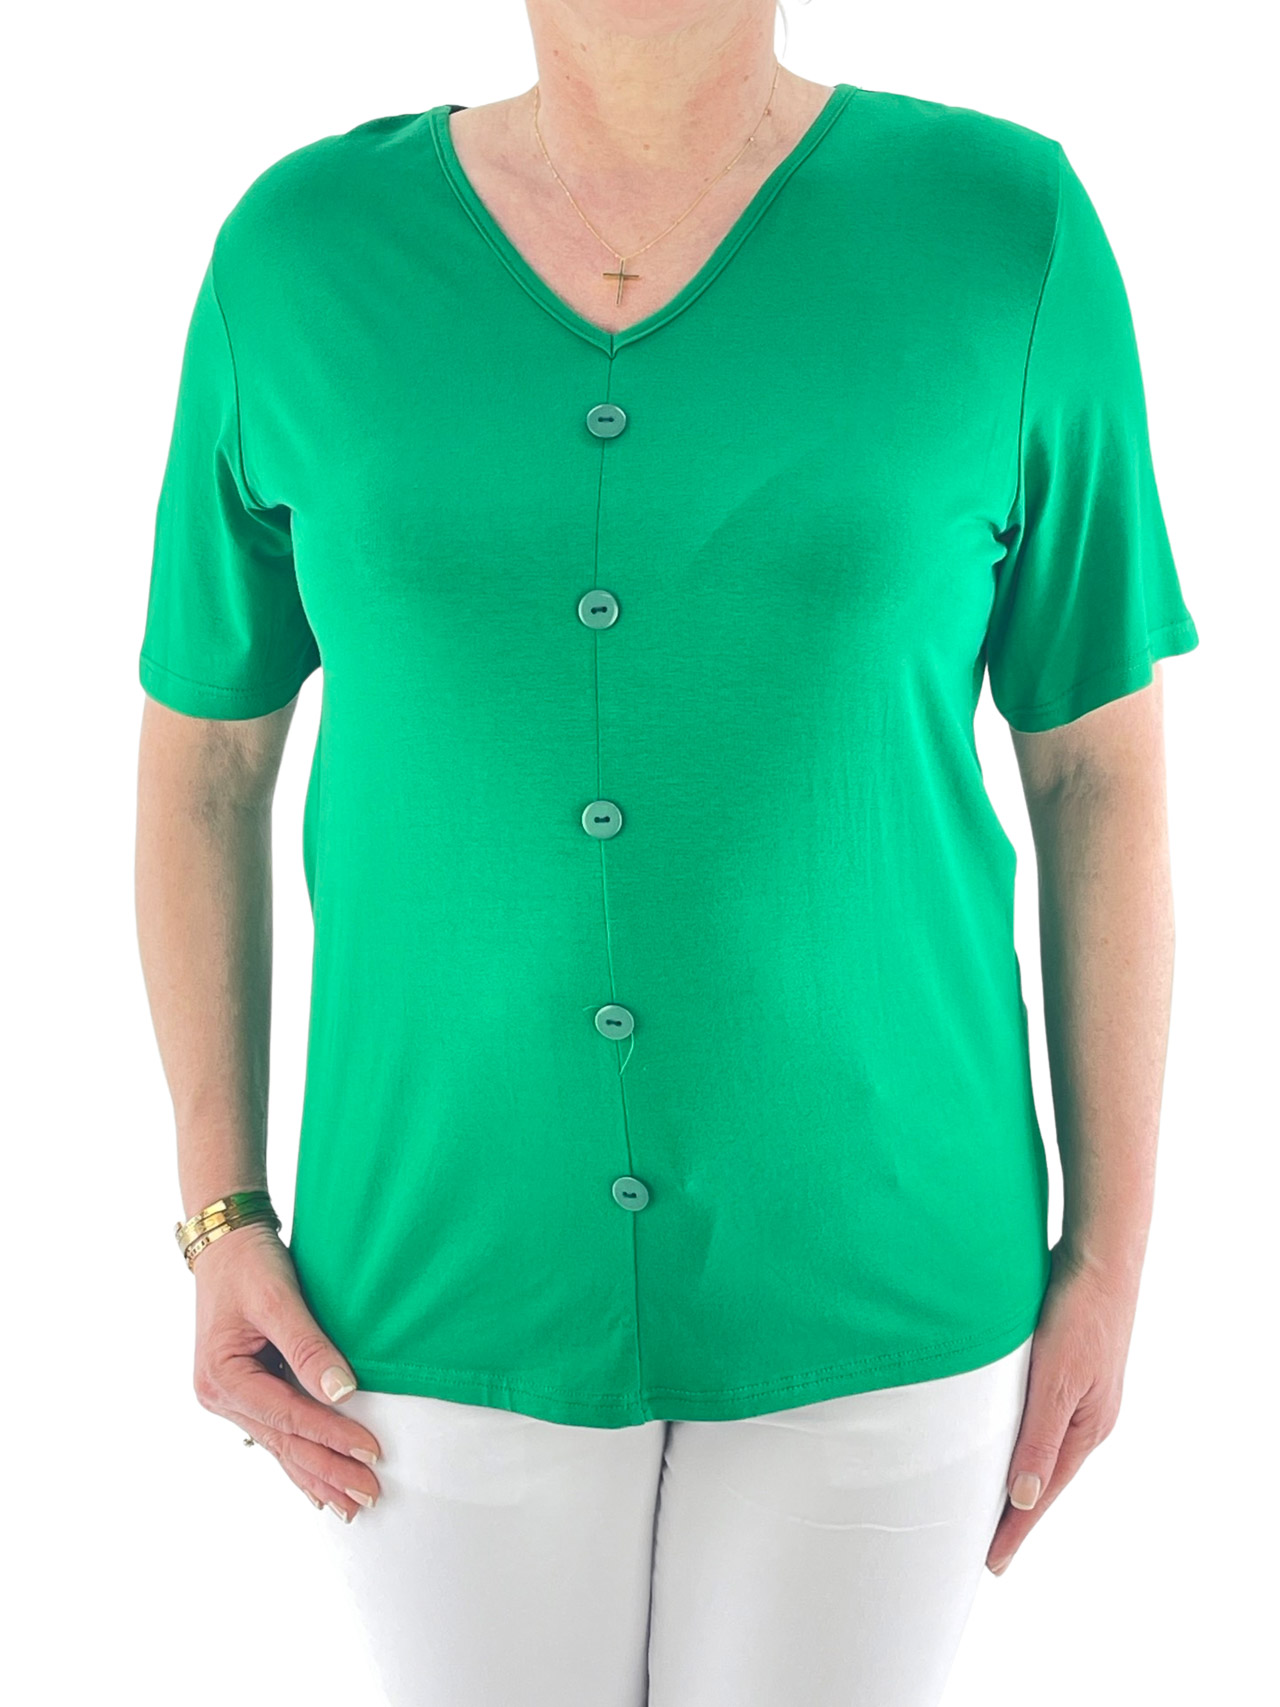 Women's blouse V monochrome code 122860